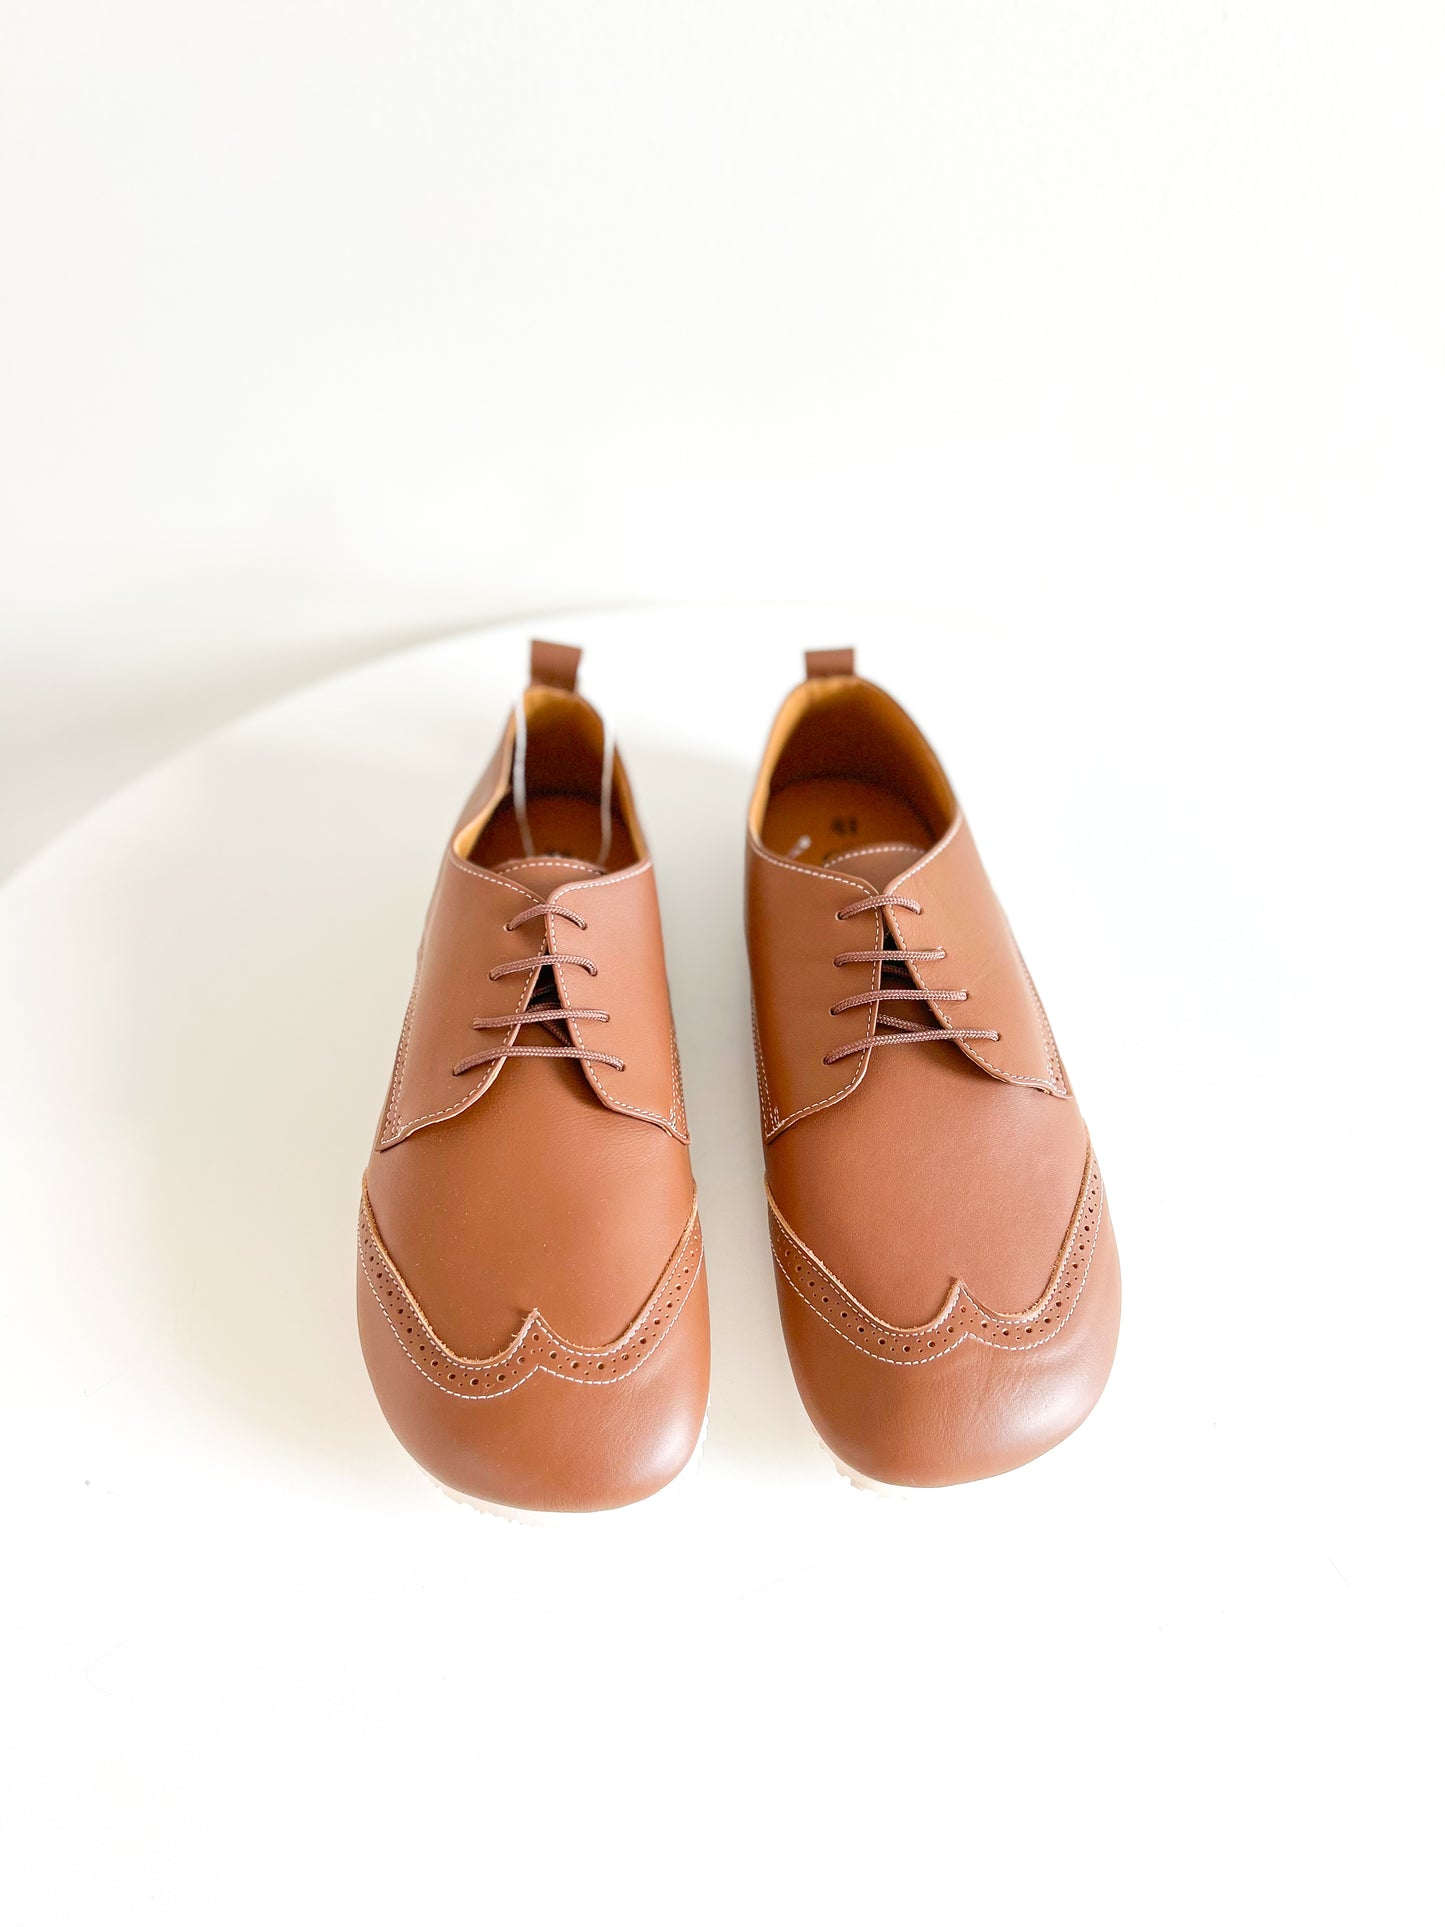 Sapatos Oxford Castanho - Dispares Descalzos